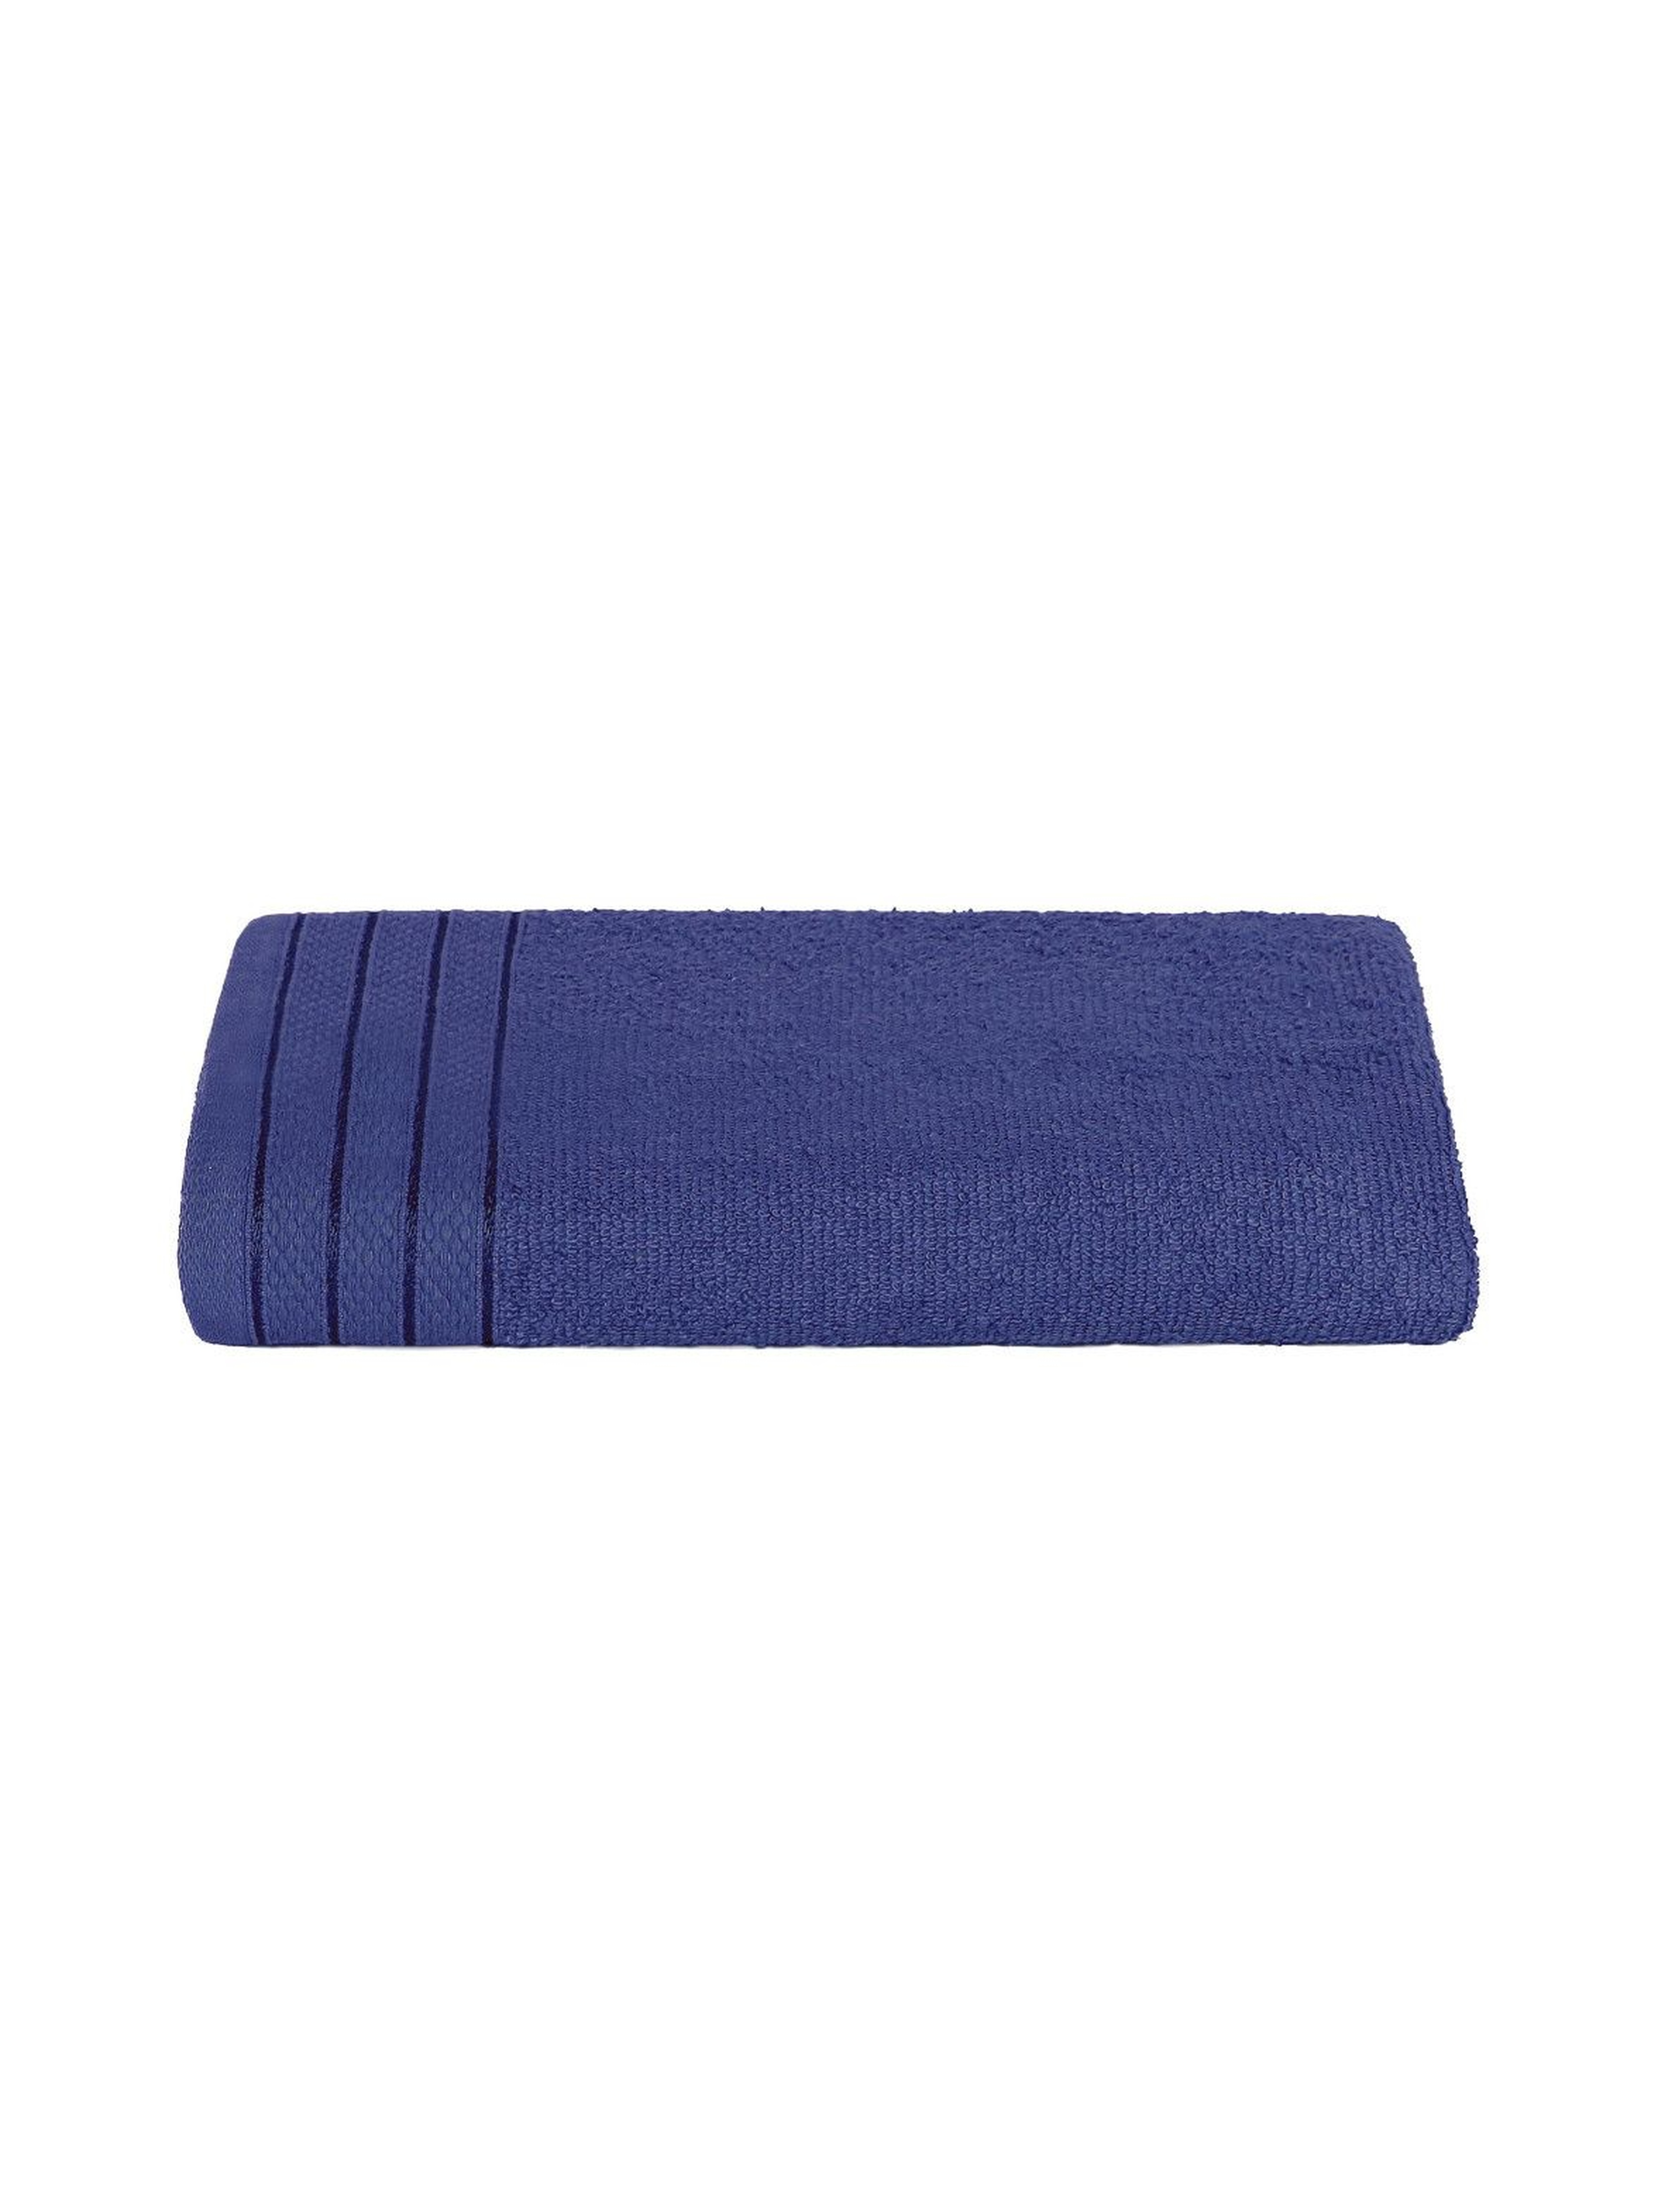 Bawełniany ręcznik w kolorze granatowym 50x90 cm